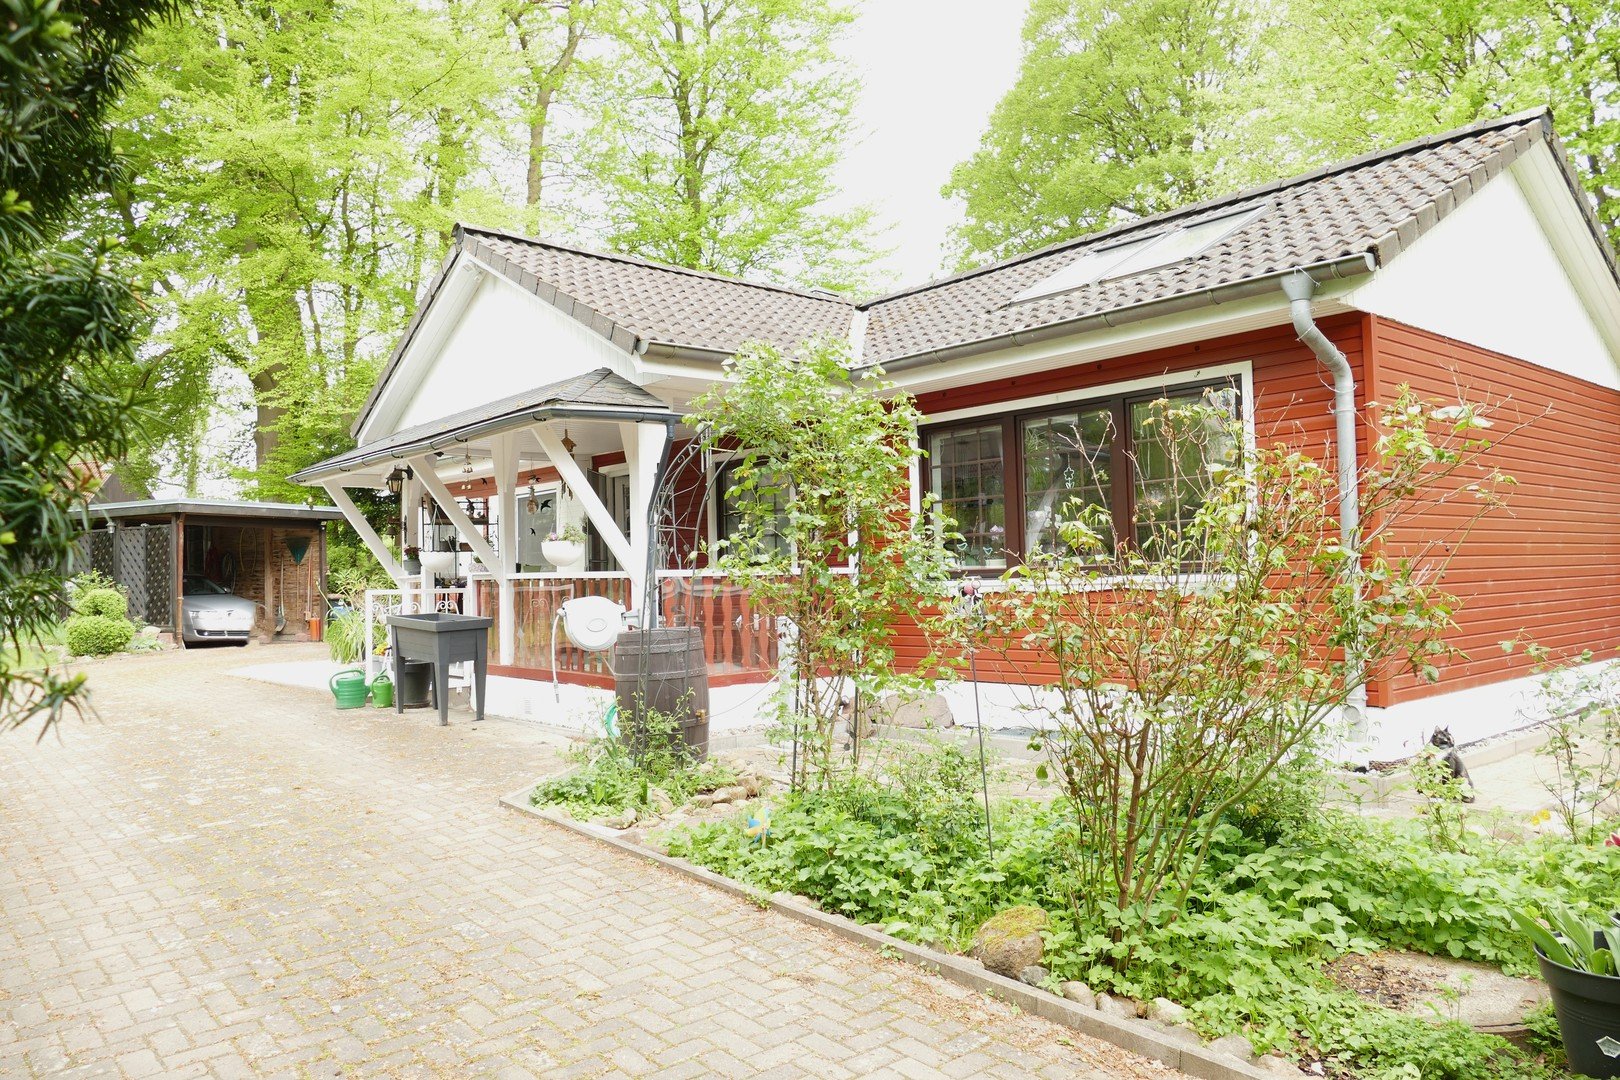 Komplett saniertes Einfamilienhaus für Paar oder Single in Dassendorf Waldsiedlung